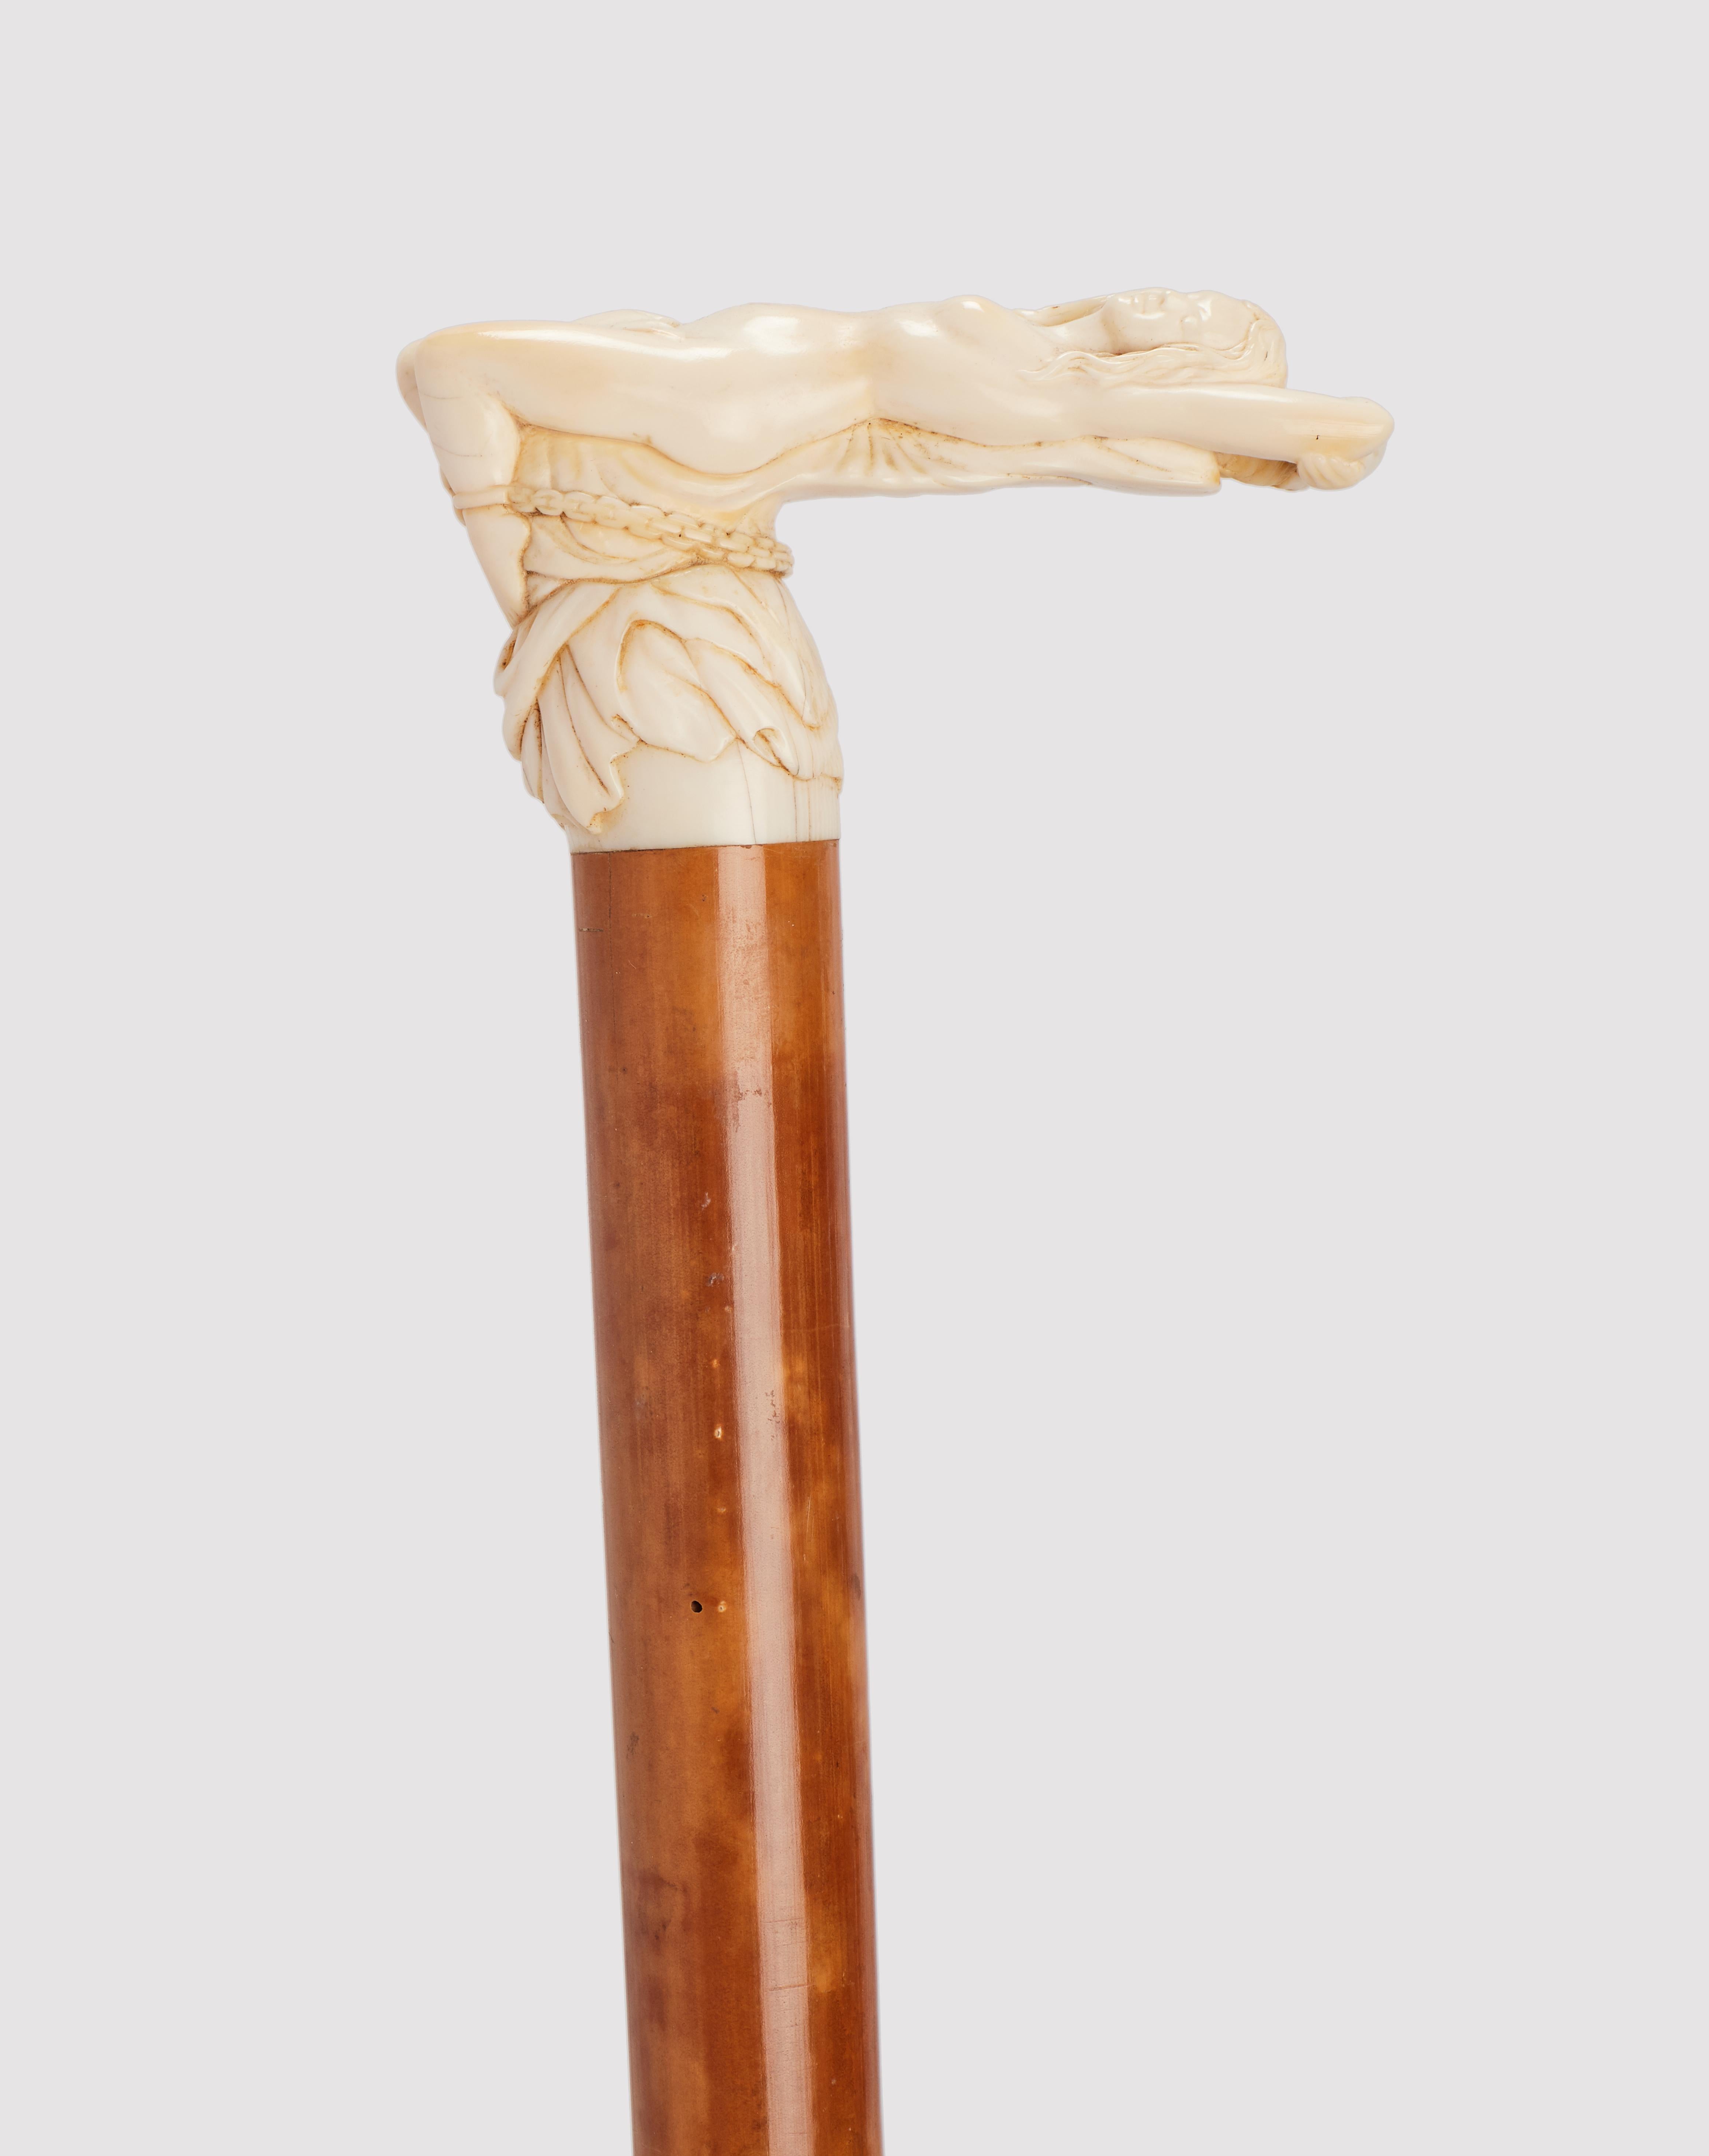 Canne : Manche en ivoire sculpté, représentant la scène de la mith grecque d'Andromède enchaînée aux rochers. Poignée en forme de L. Arbre en bois de Malacca. Virole en métal. Angleterre vers 1880. (LIVRAISON DANS L'UE UNIQUEMENT)